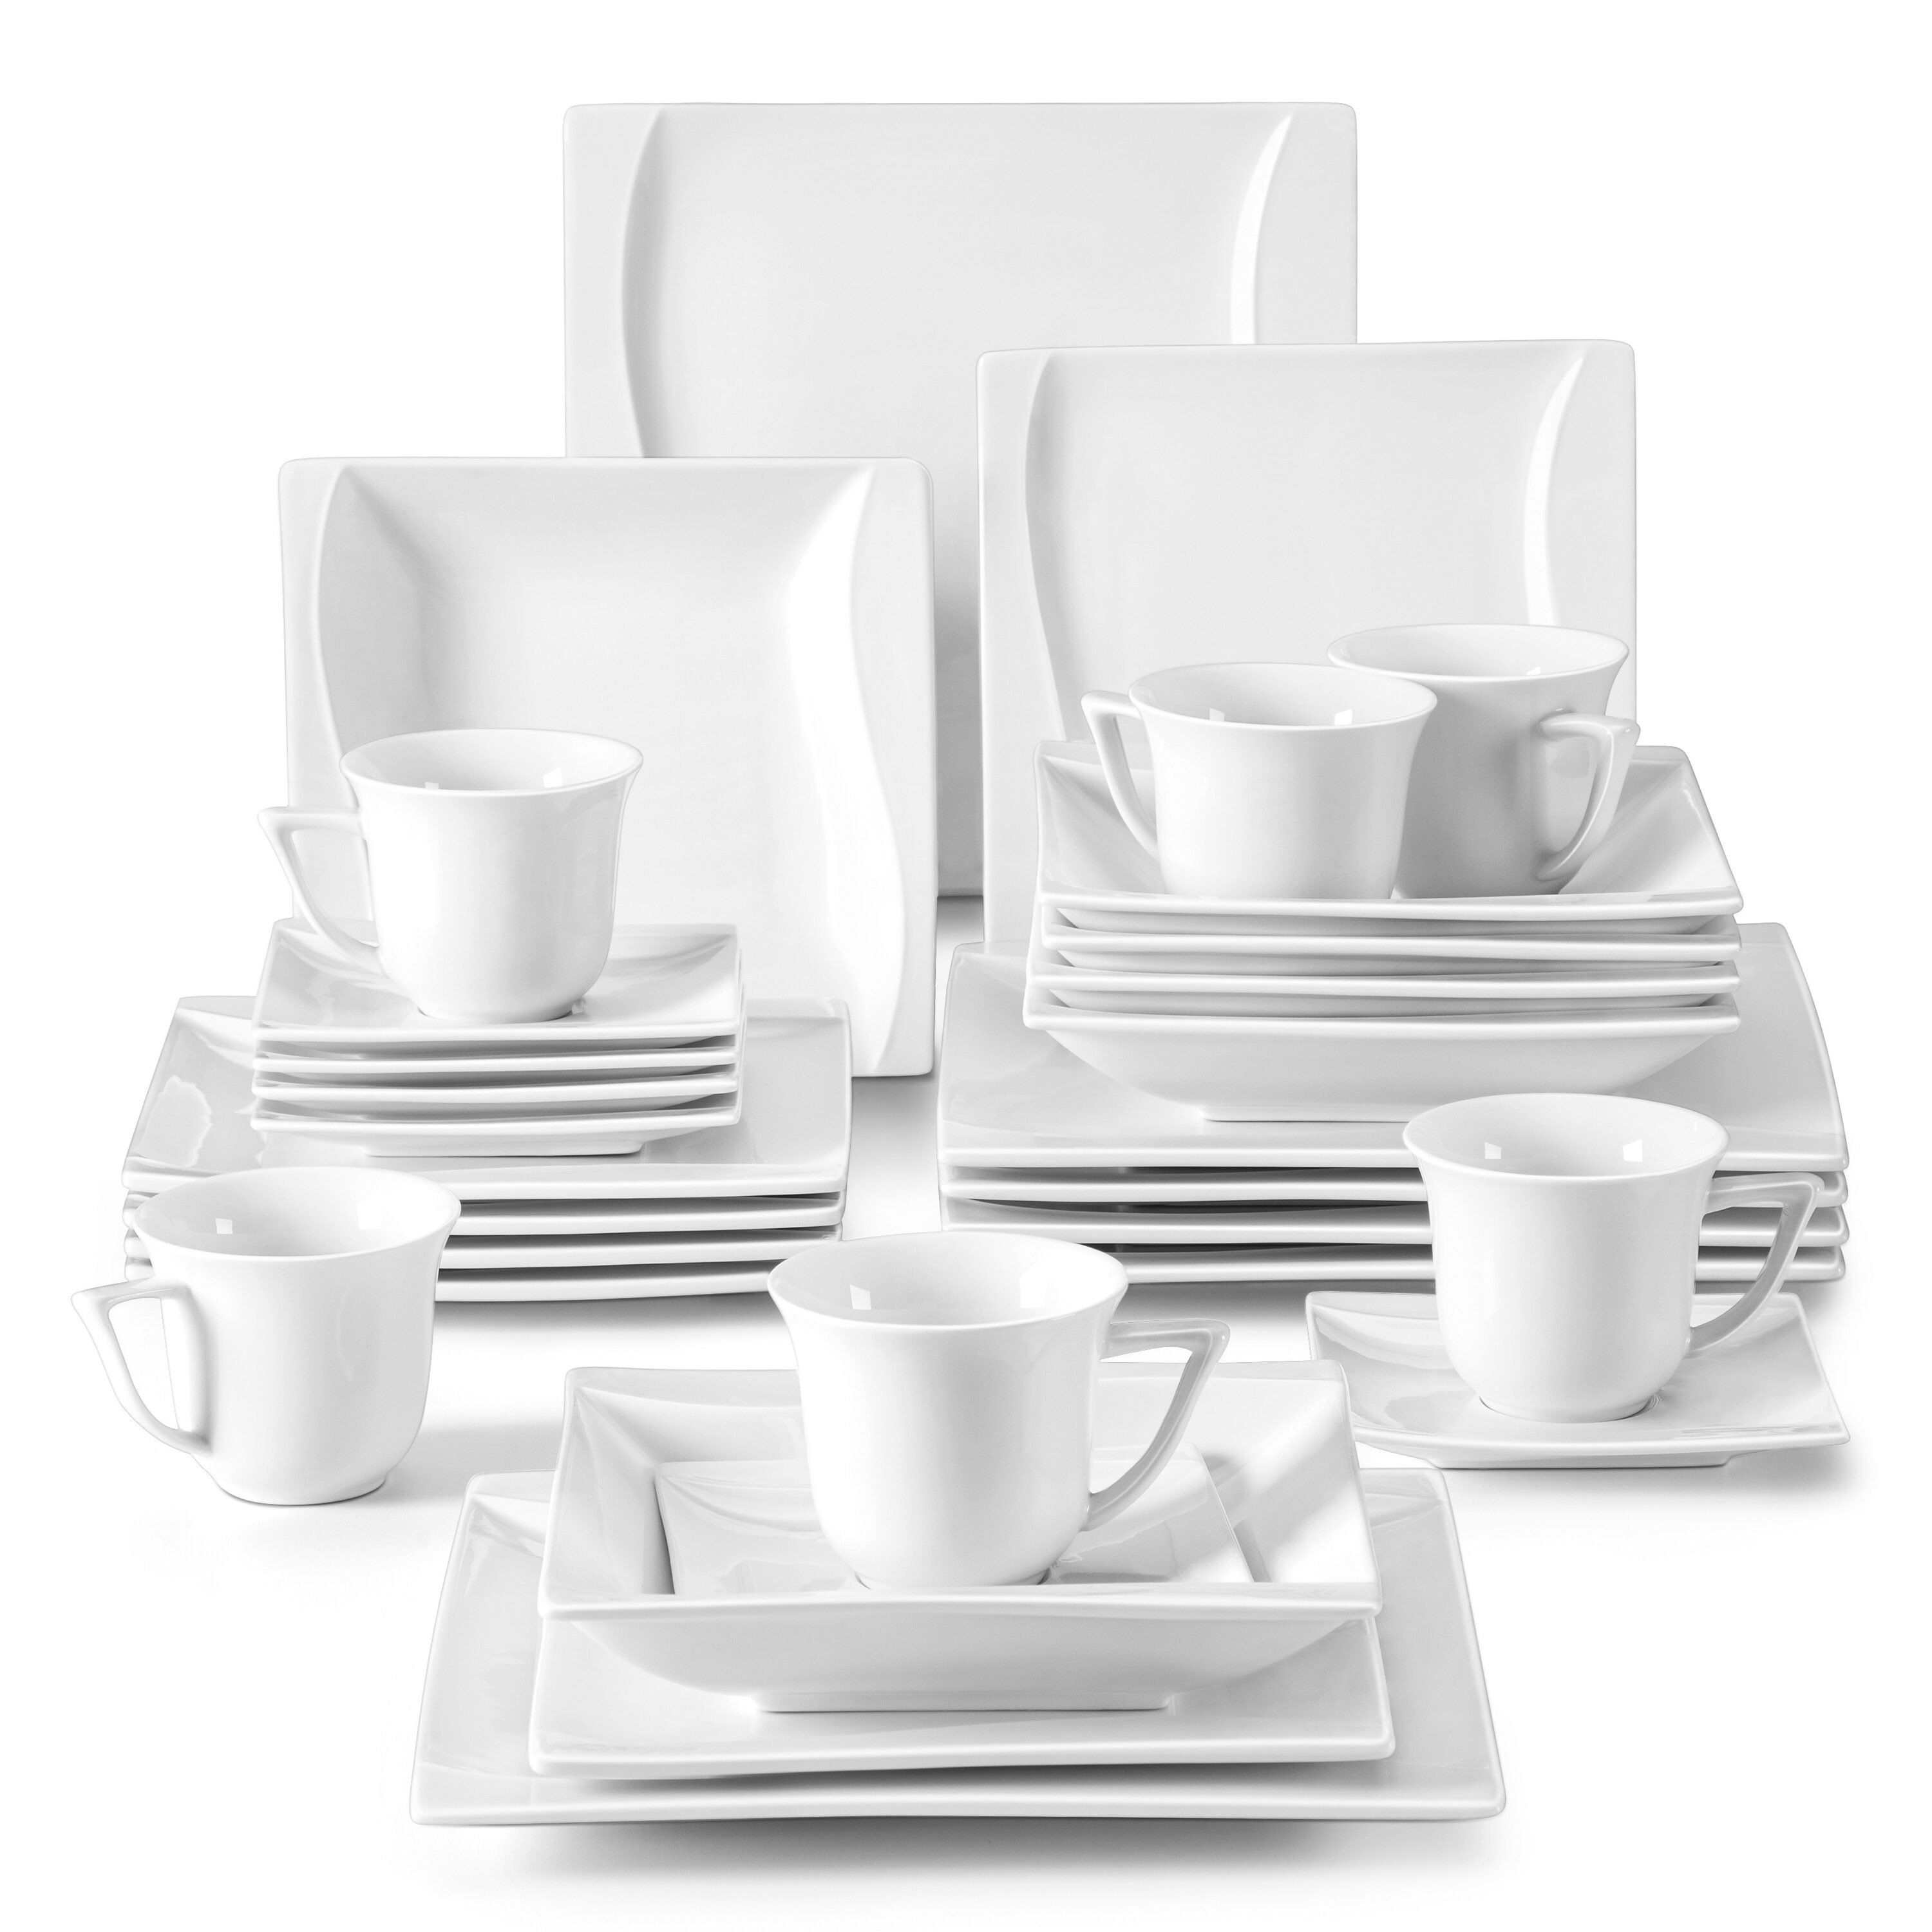 MALACASA Square Dinnerware Sets, 60-Piece Ivory White